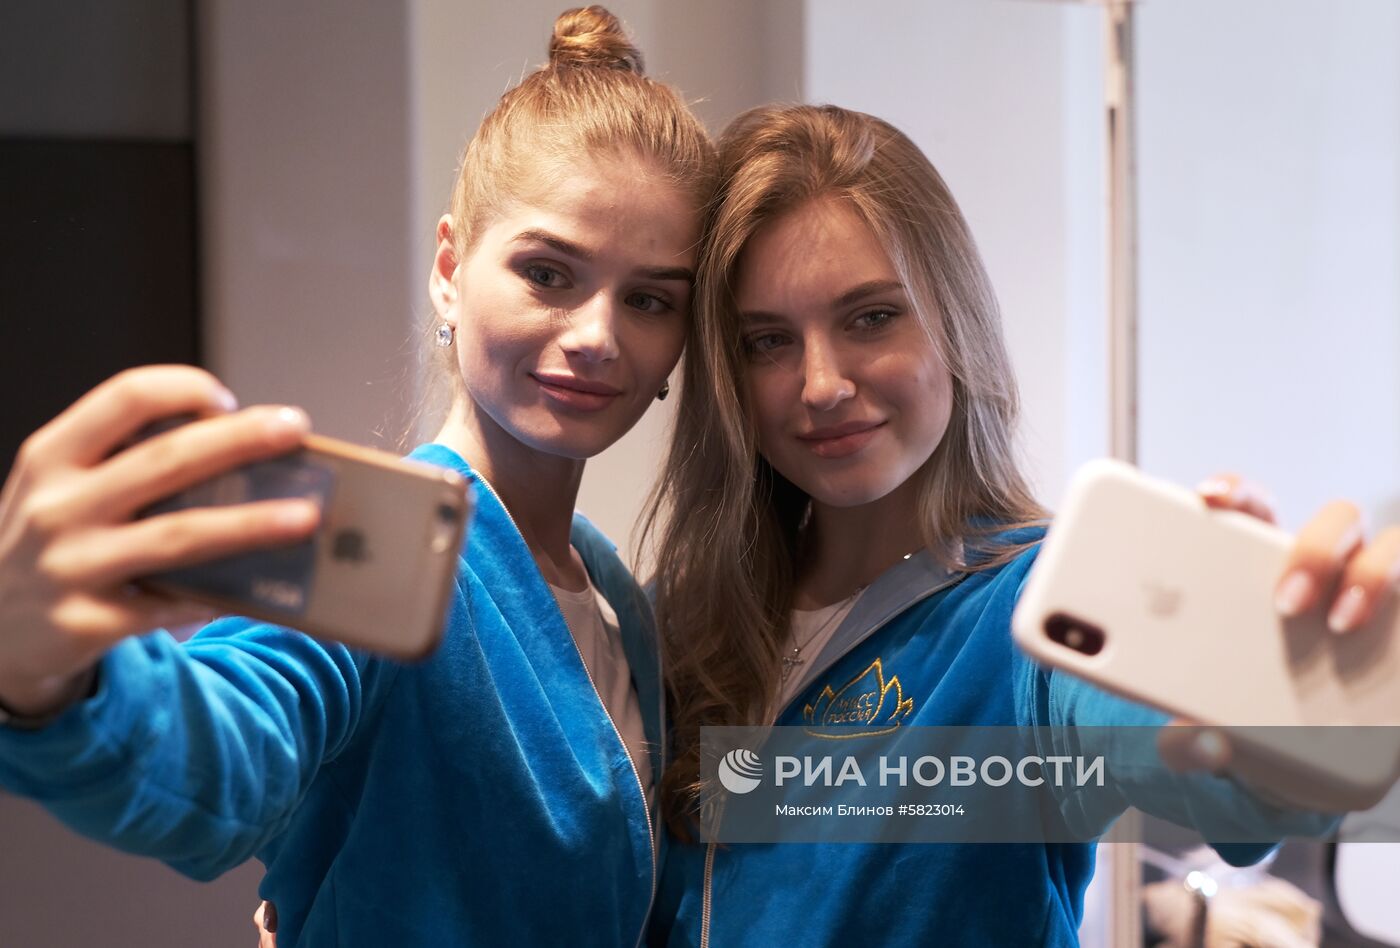 Старт конкурса "Мисс Россия 2019" 